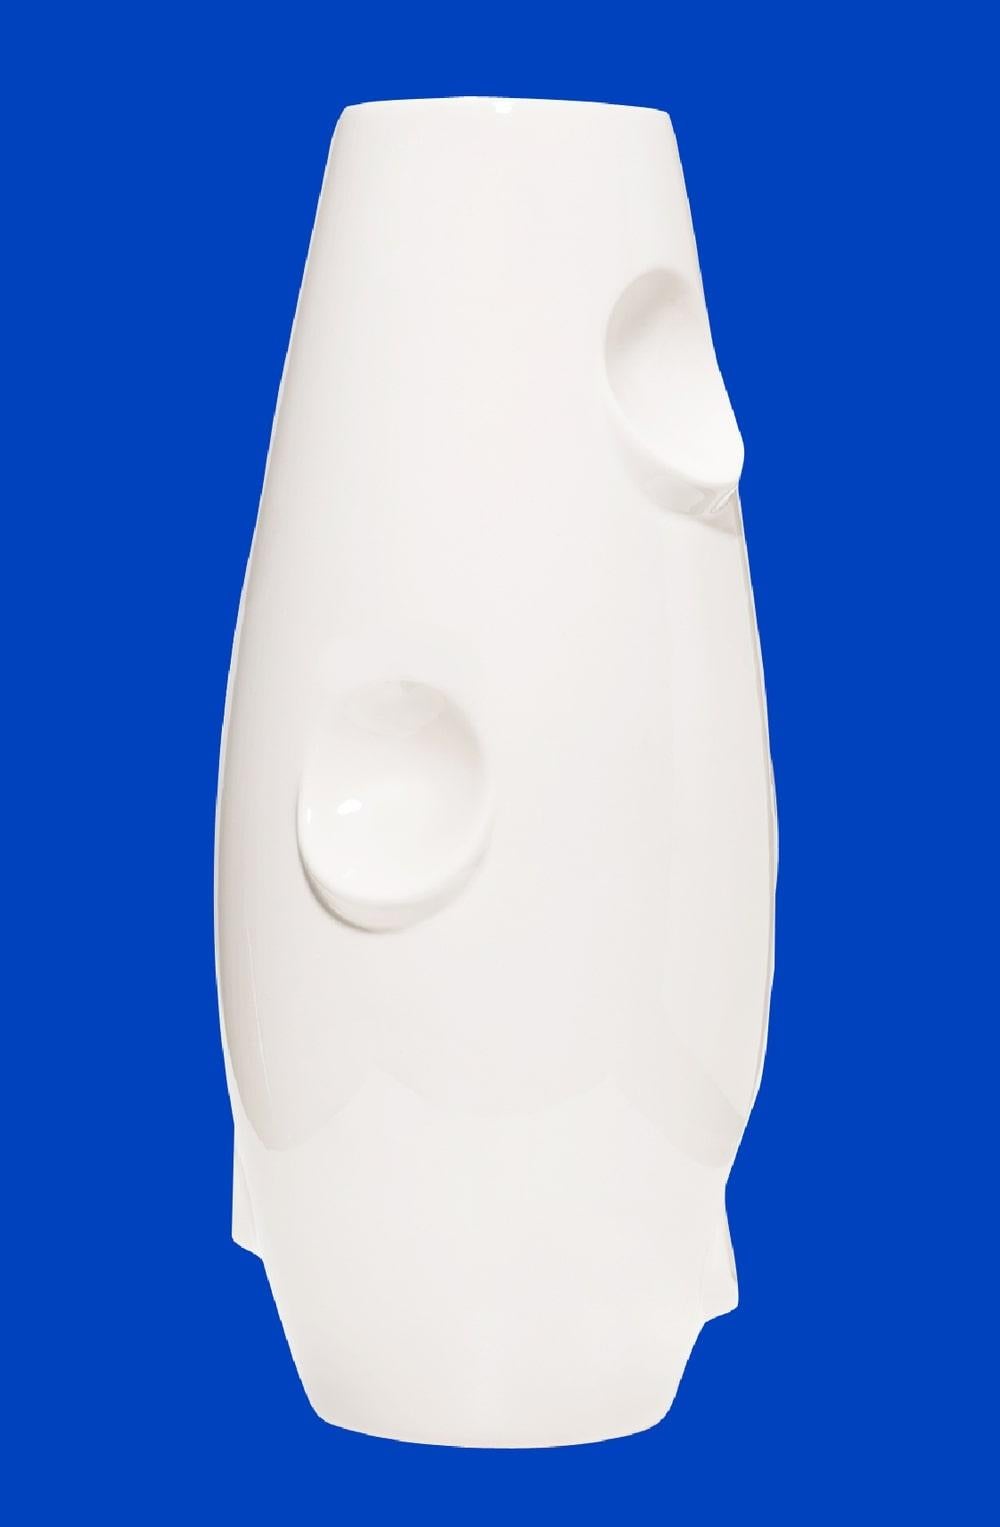 Contemporary OKO Colbalt Ceramic Vase by Malwina Konopacka